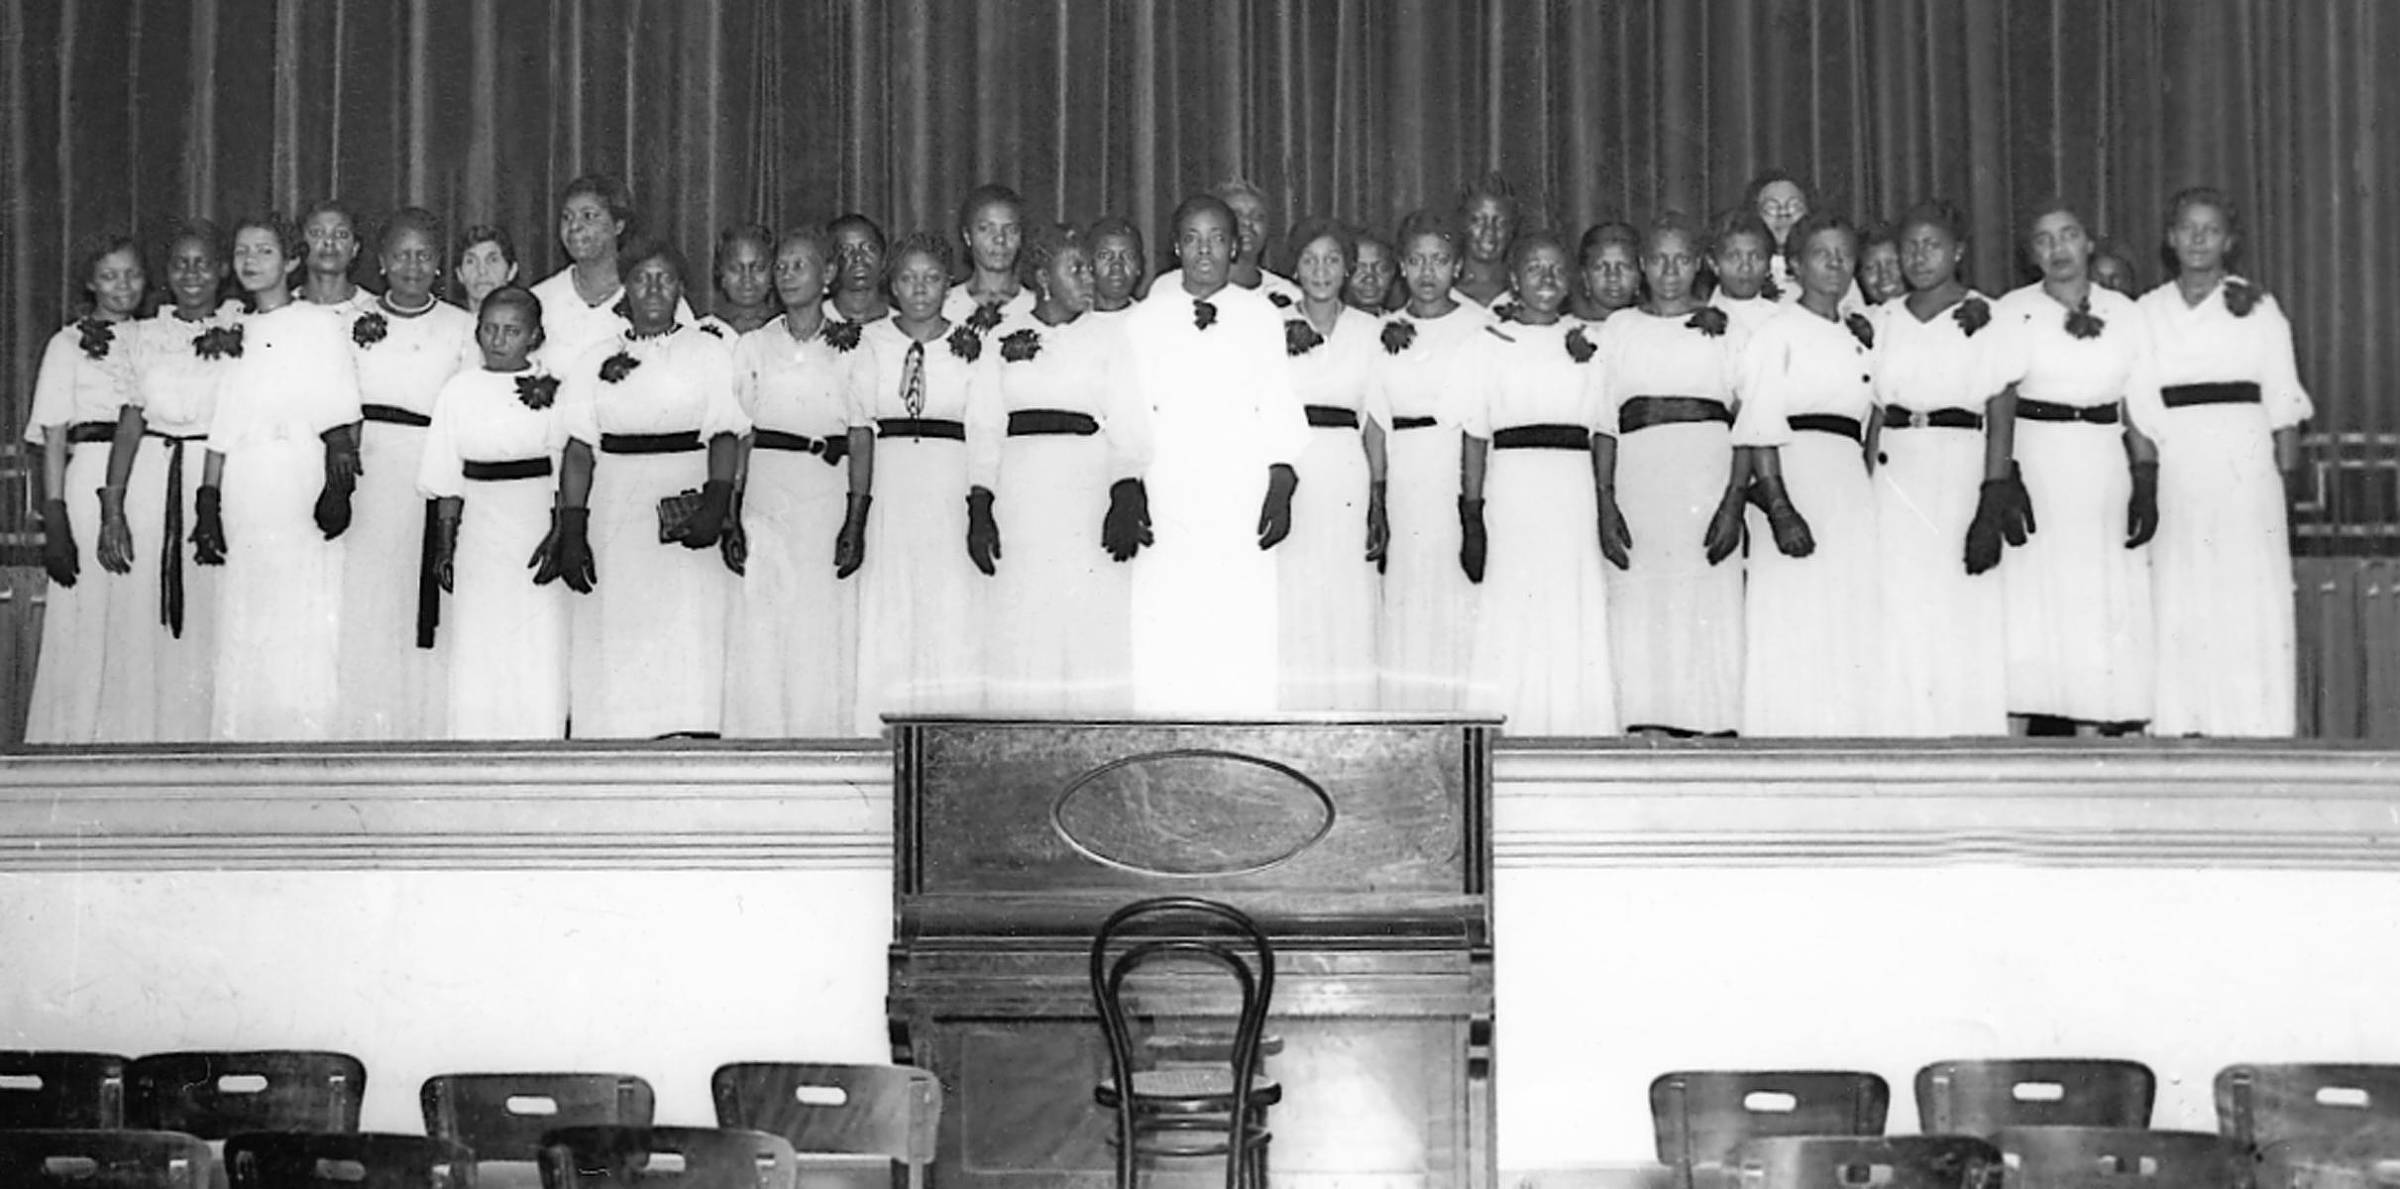 Imagem em preto e branco mostra um grupo de mulheres em um palco